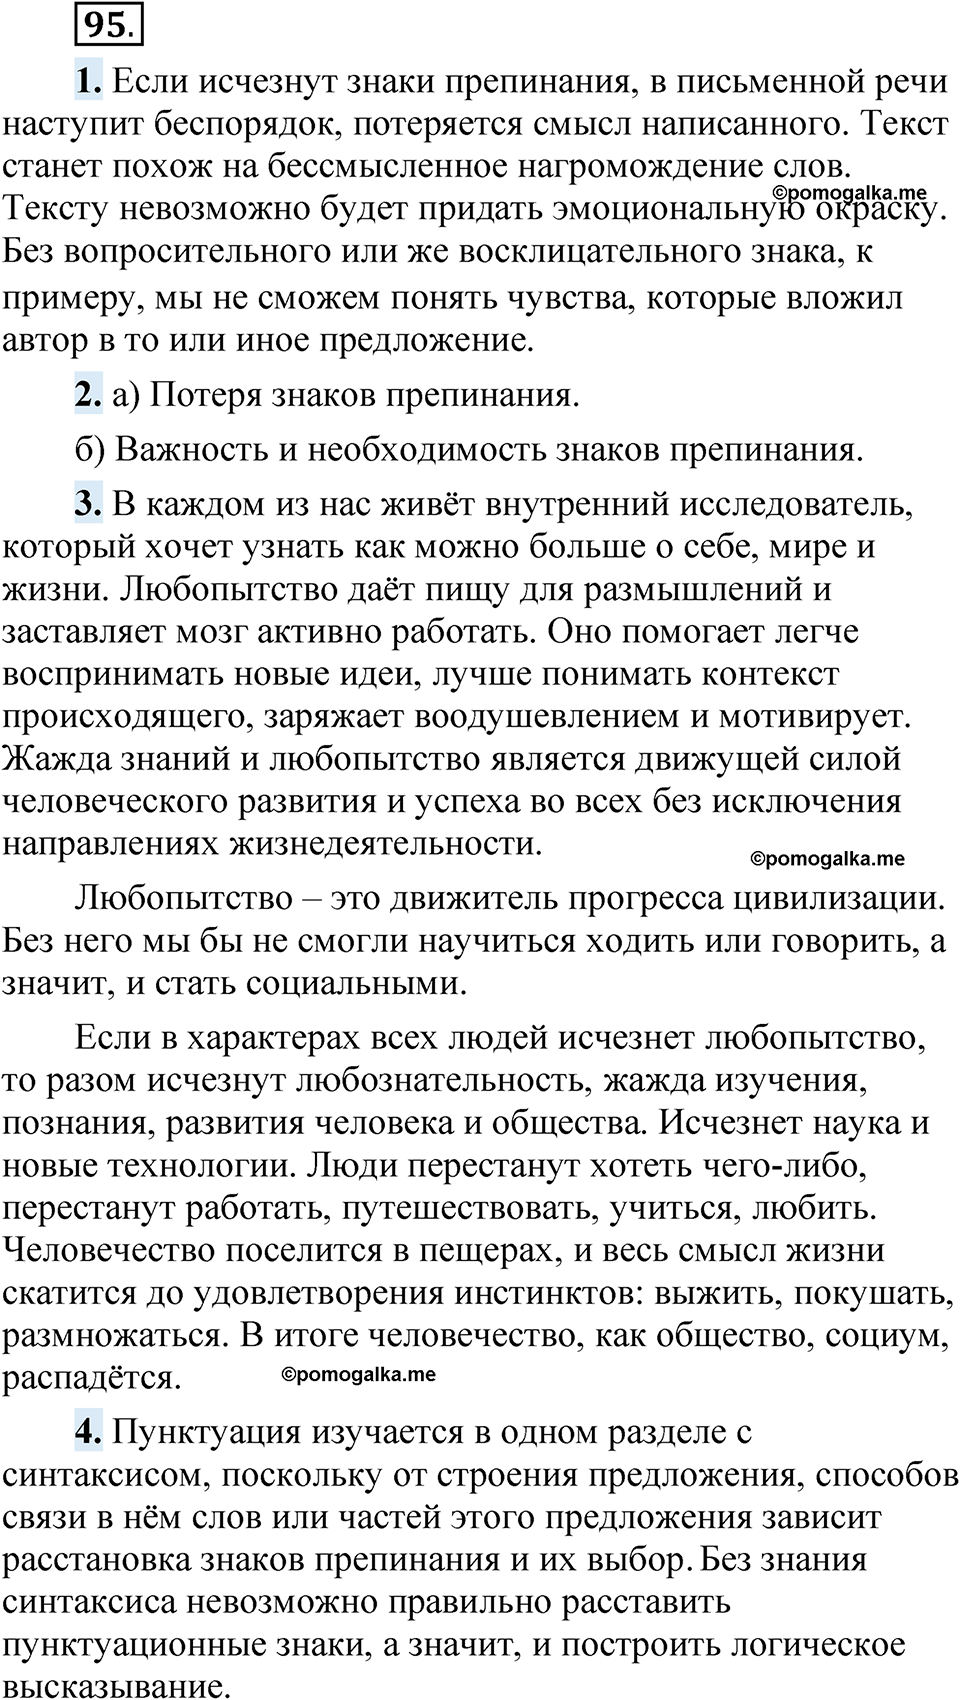 страница 80 упражнение 95 русский язык 5 класс Быстрова, Кибирева 1 часть 2021 год